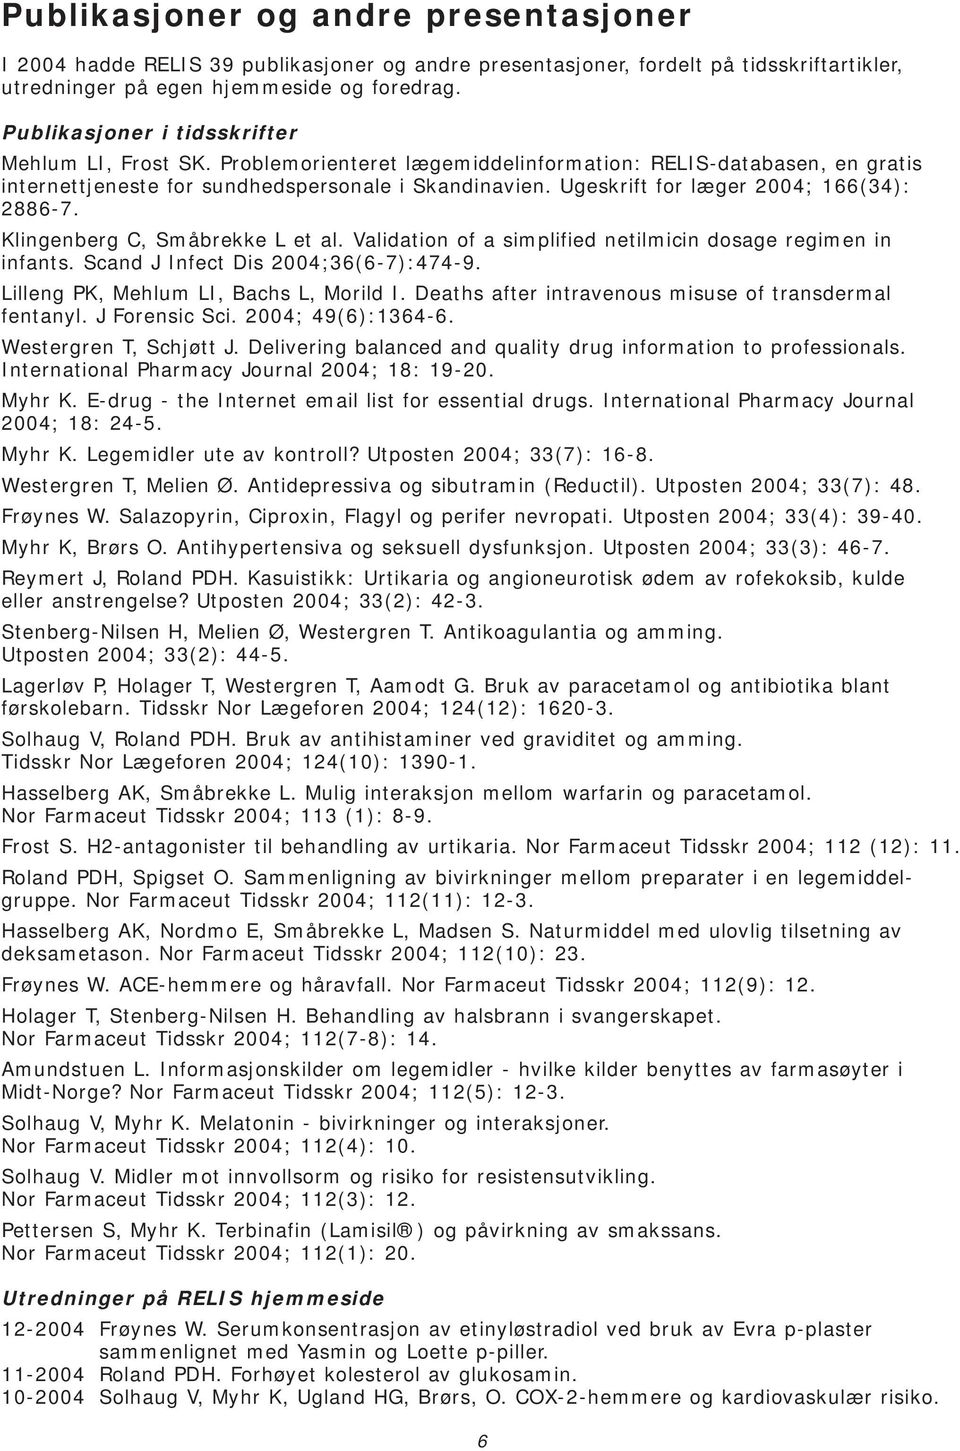 Ugeskrift for læger 2004; 166(34): 2886-7. Klingenberg C, Småbrekke L et al. Validation of a simplified netilmicin dosage regimen in infants. Scand J Infect Dis 2004;36(6-7):474-9.